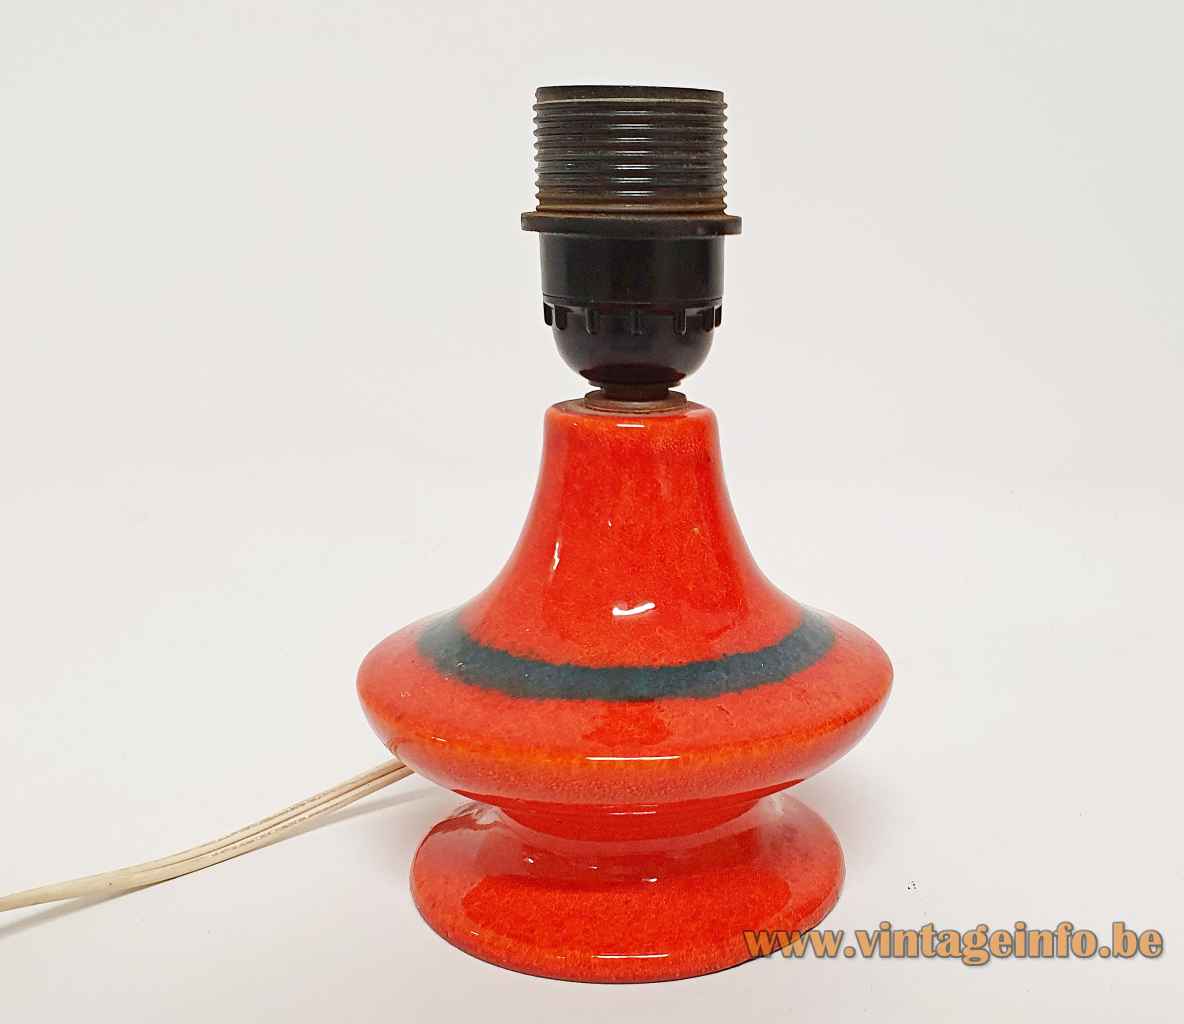 1960s German ceramics table lamp round red & black glazed pottery base Bakelite E27 socket Hustadt-Leuchten